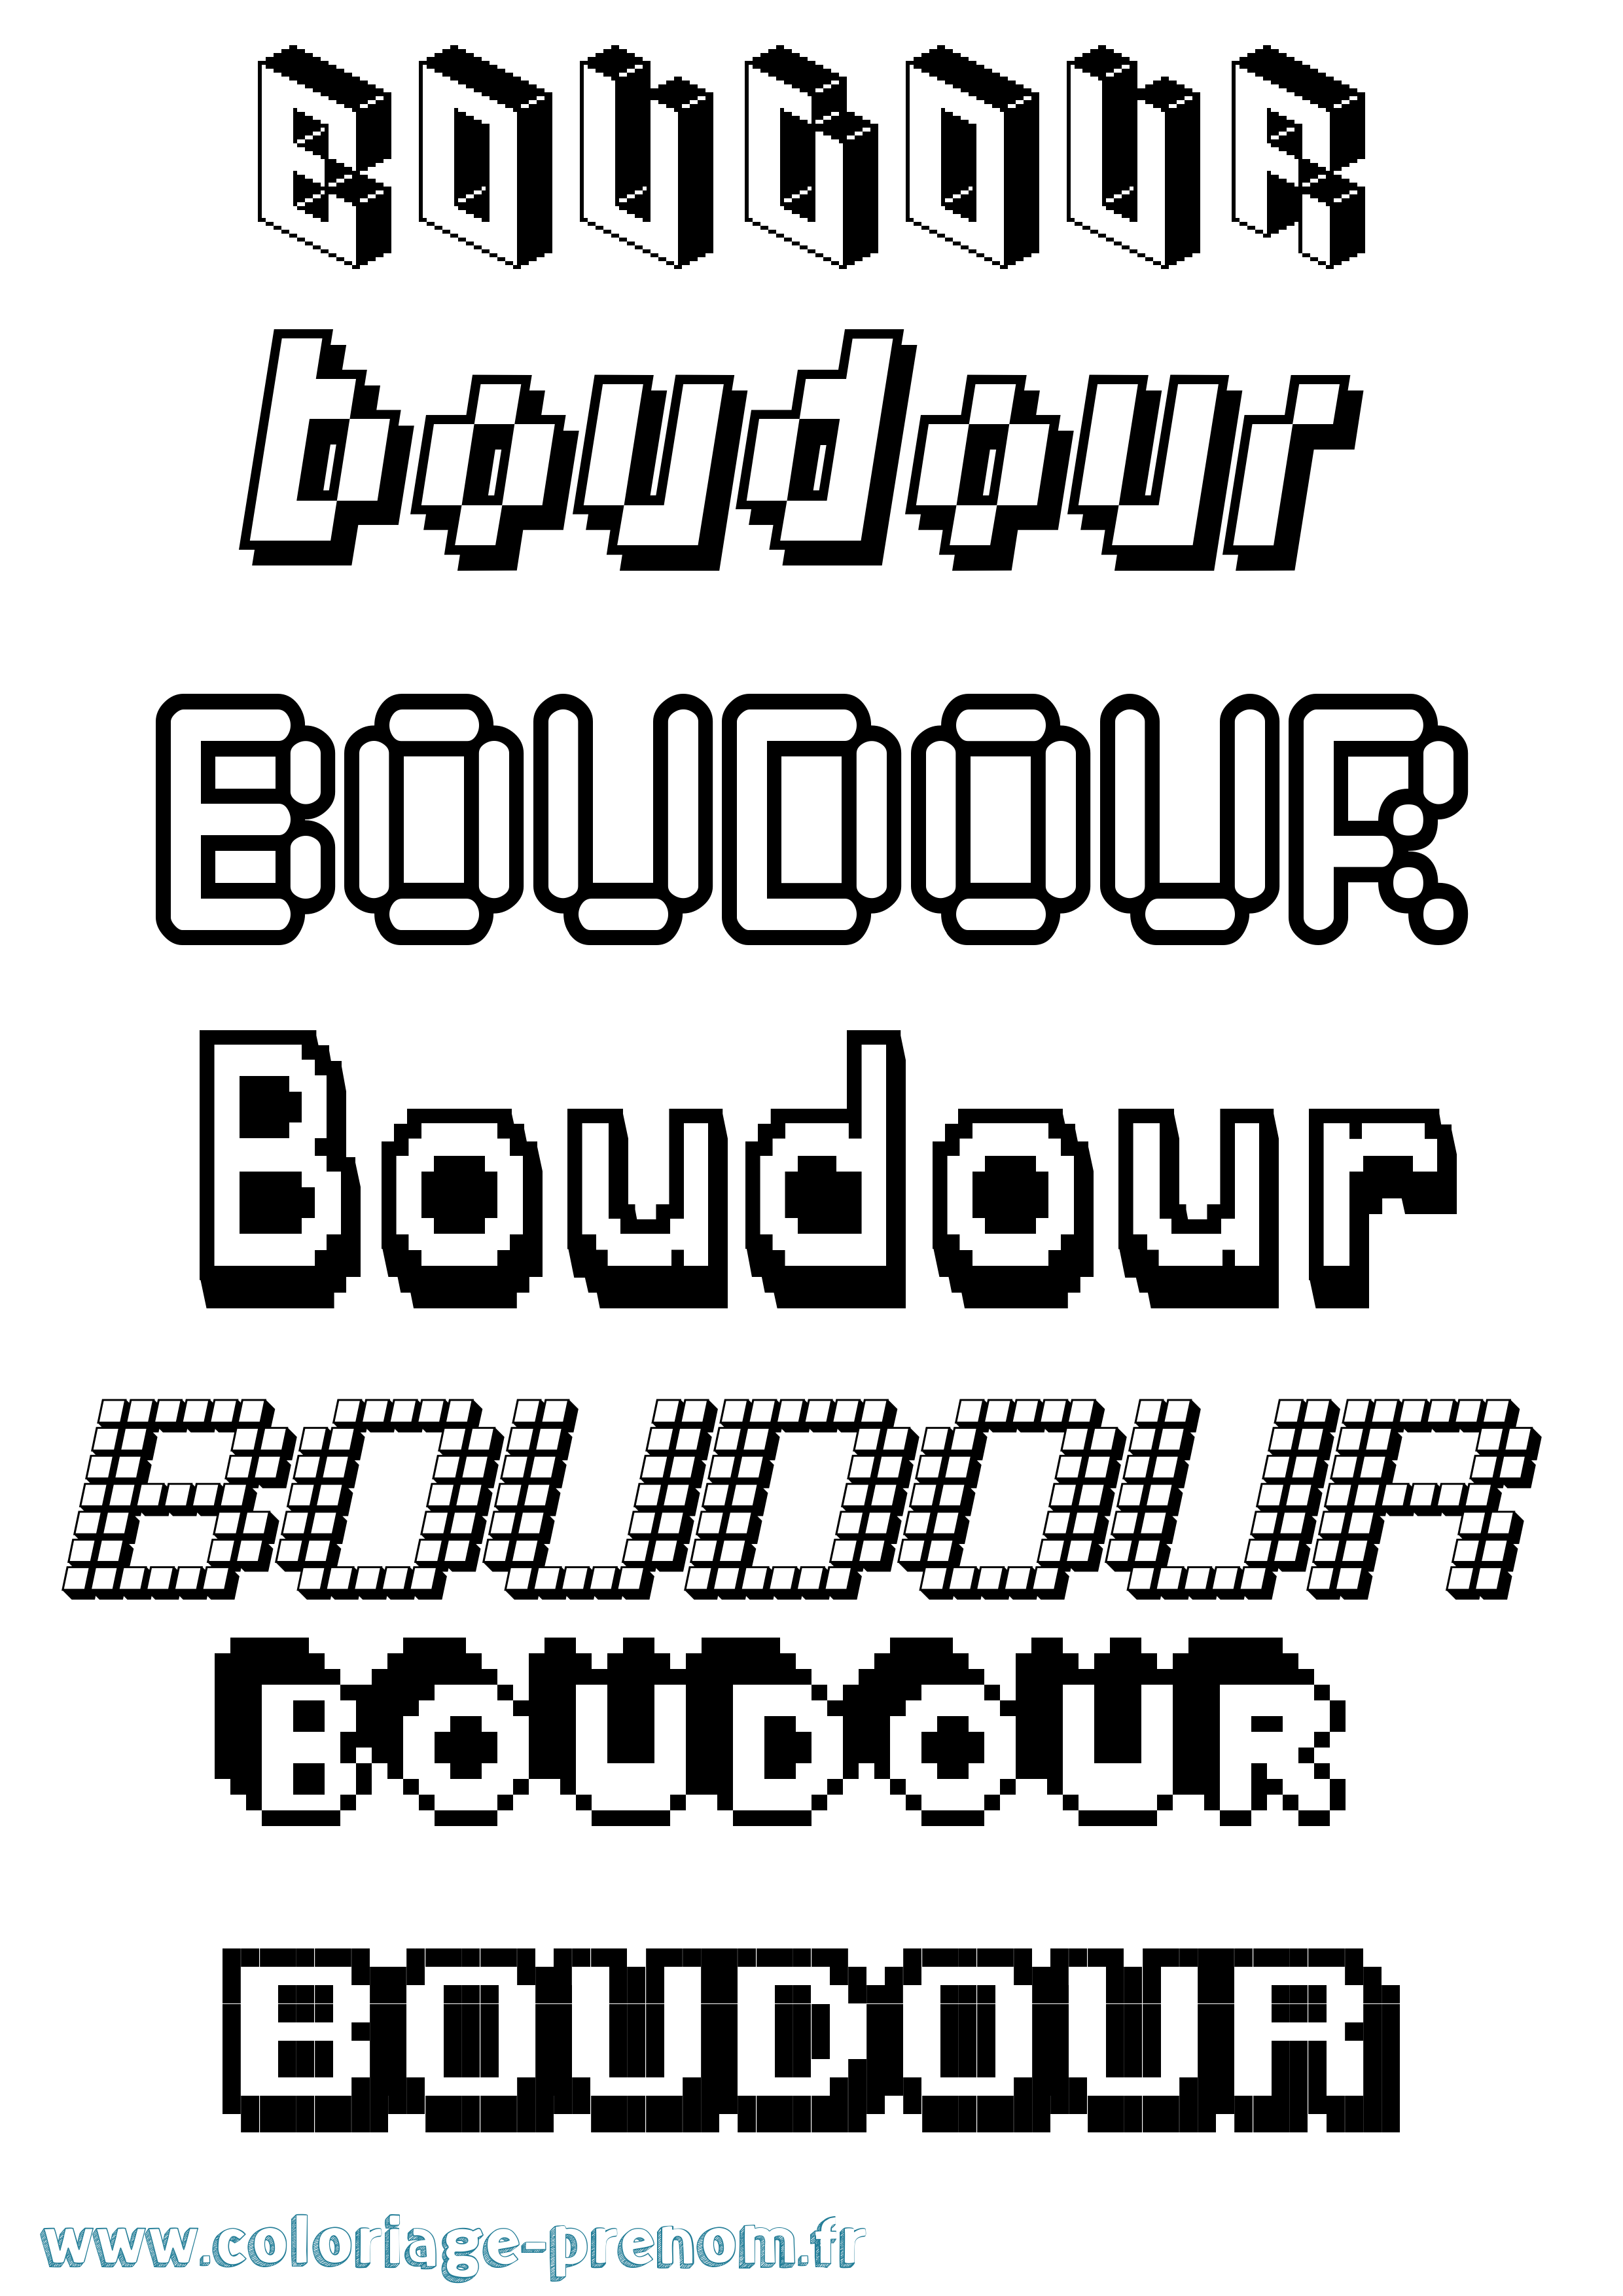 Coloriage prénom Boudour Pixel